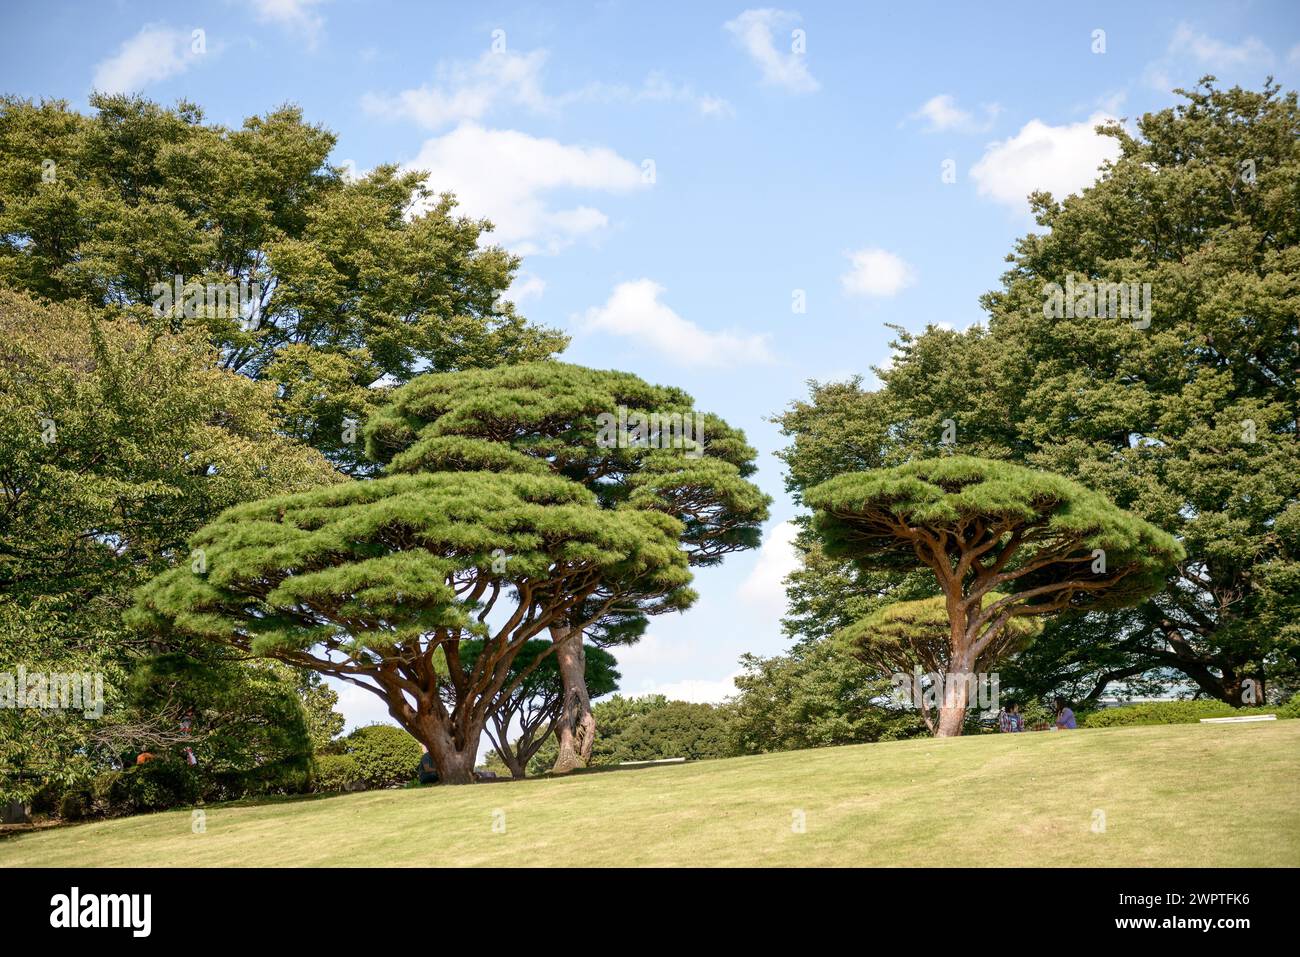 Japanese red pine (Pinus densiflora 'Umbraculifera'), Shinjuku Gyoen Garden, Shinjuku Imperial Park, Tokyo, Honshu, Japan Stock Photo